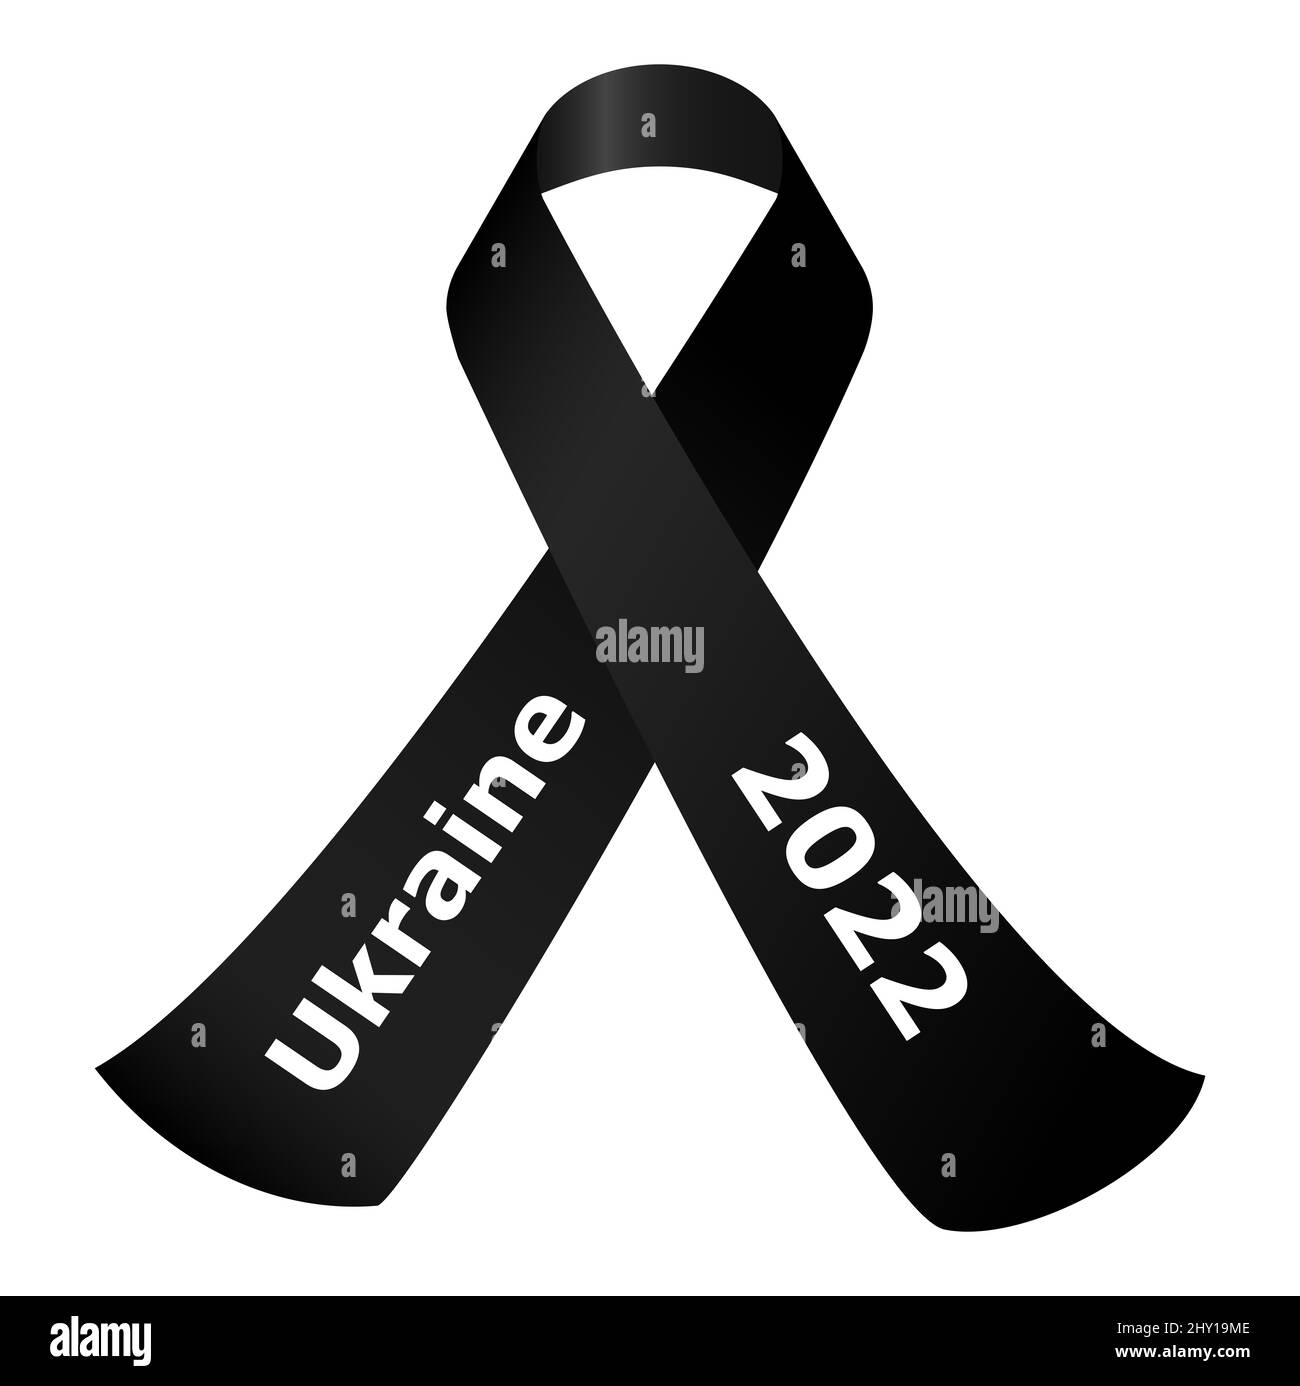 illustration vectorielle eps du ruban noir de deuil avec texte ukraine et 2022 - ARRÊTER LA GUERRE - conflit avec la russie 2022 Banque D'Images